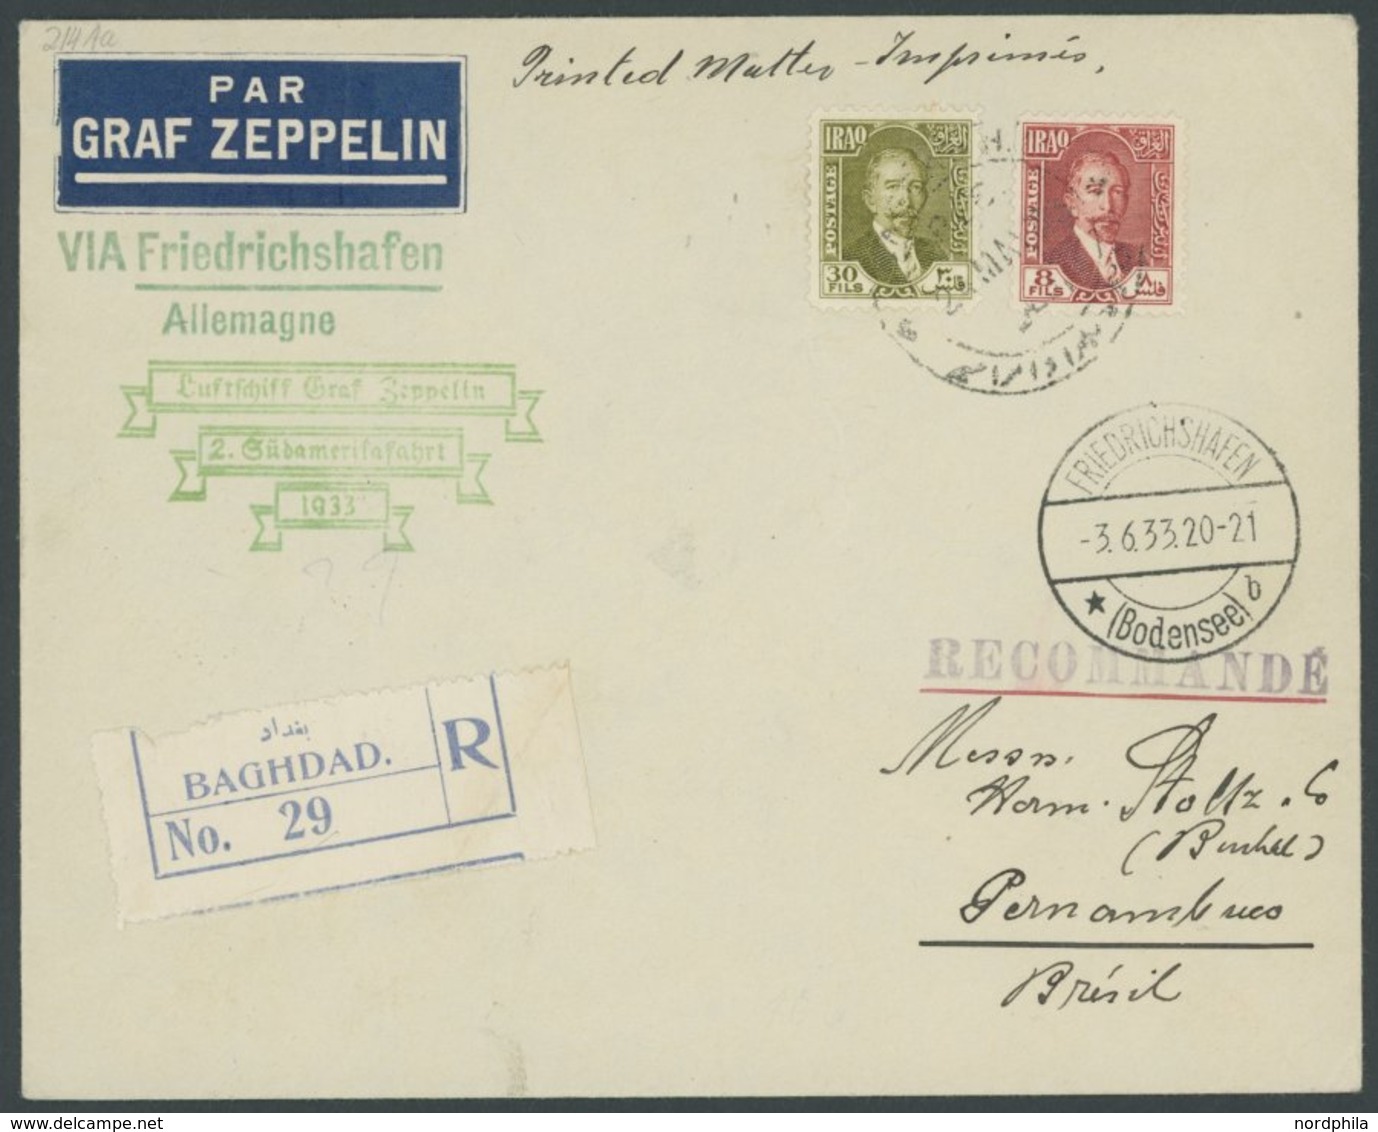 Irak: 1933, 2. Südamerikafahrt, Einschreib-Drucksache, Prachtbrief -> Automatically Generated Translation: Iraq: 1933, " - Airmail & Zeppelin